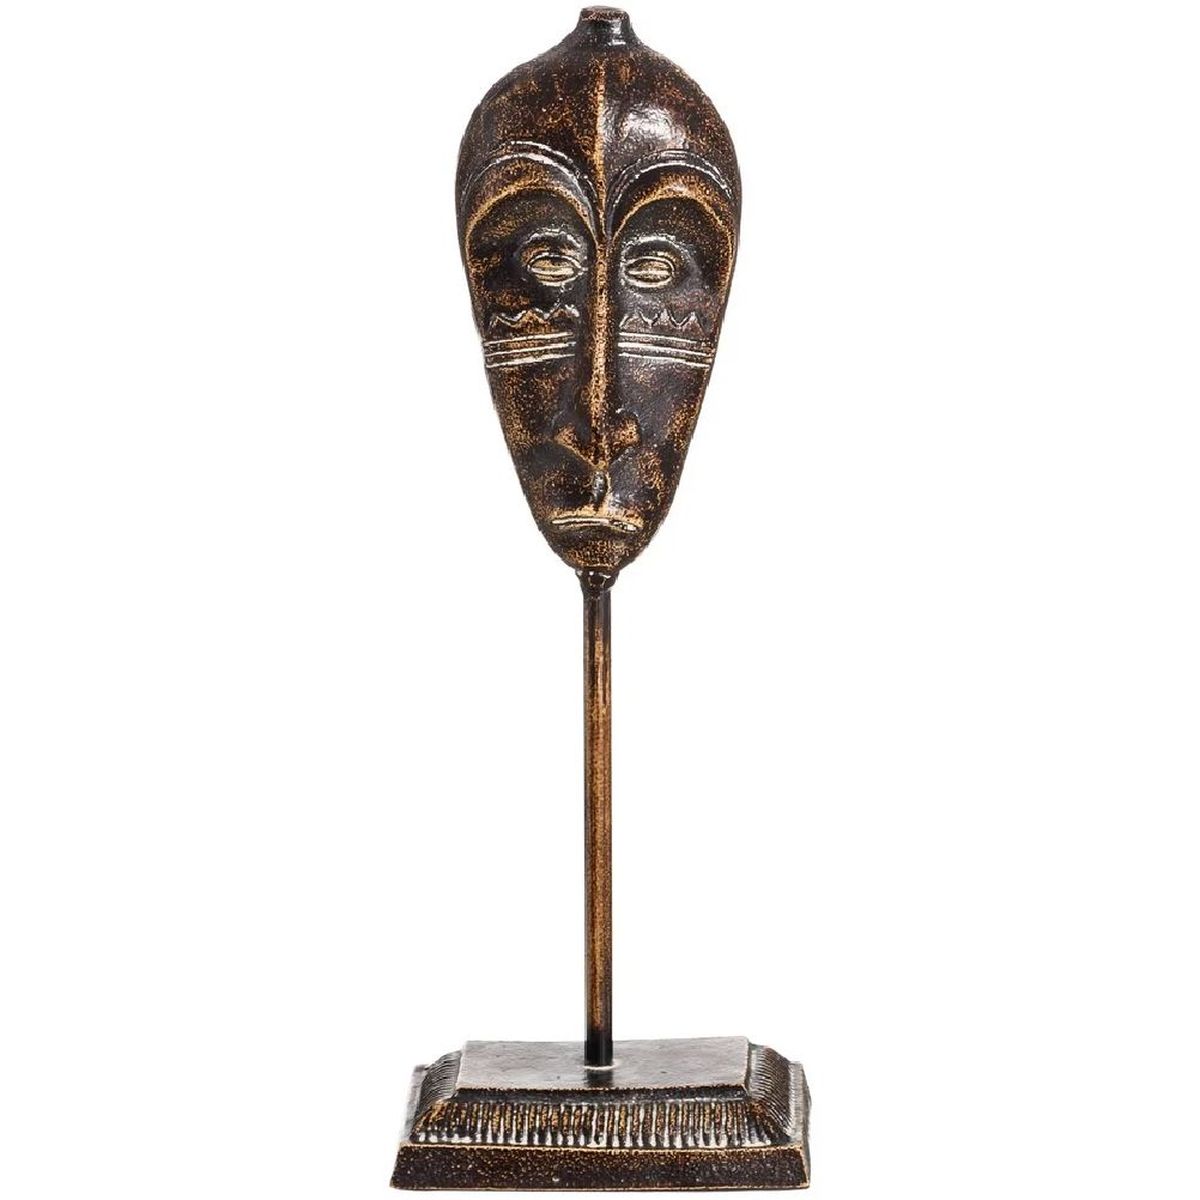 Masque Africain sur pied Visage allong - 41.5 cm